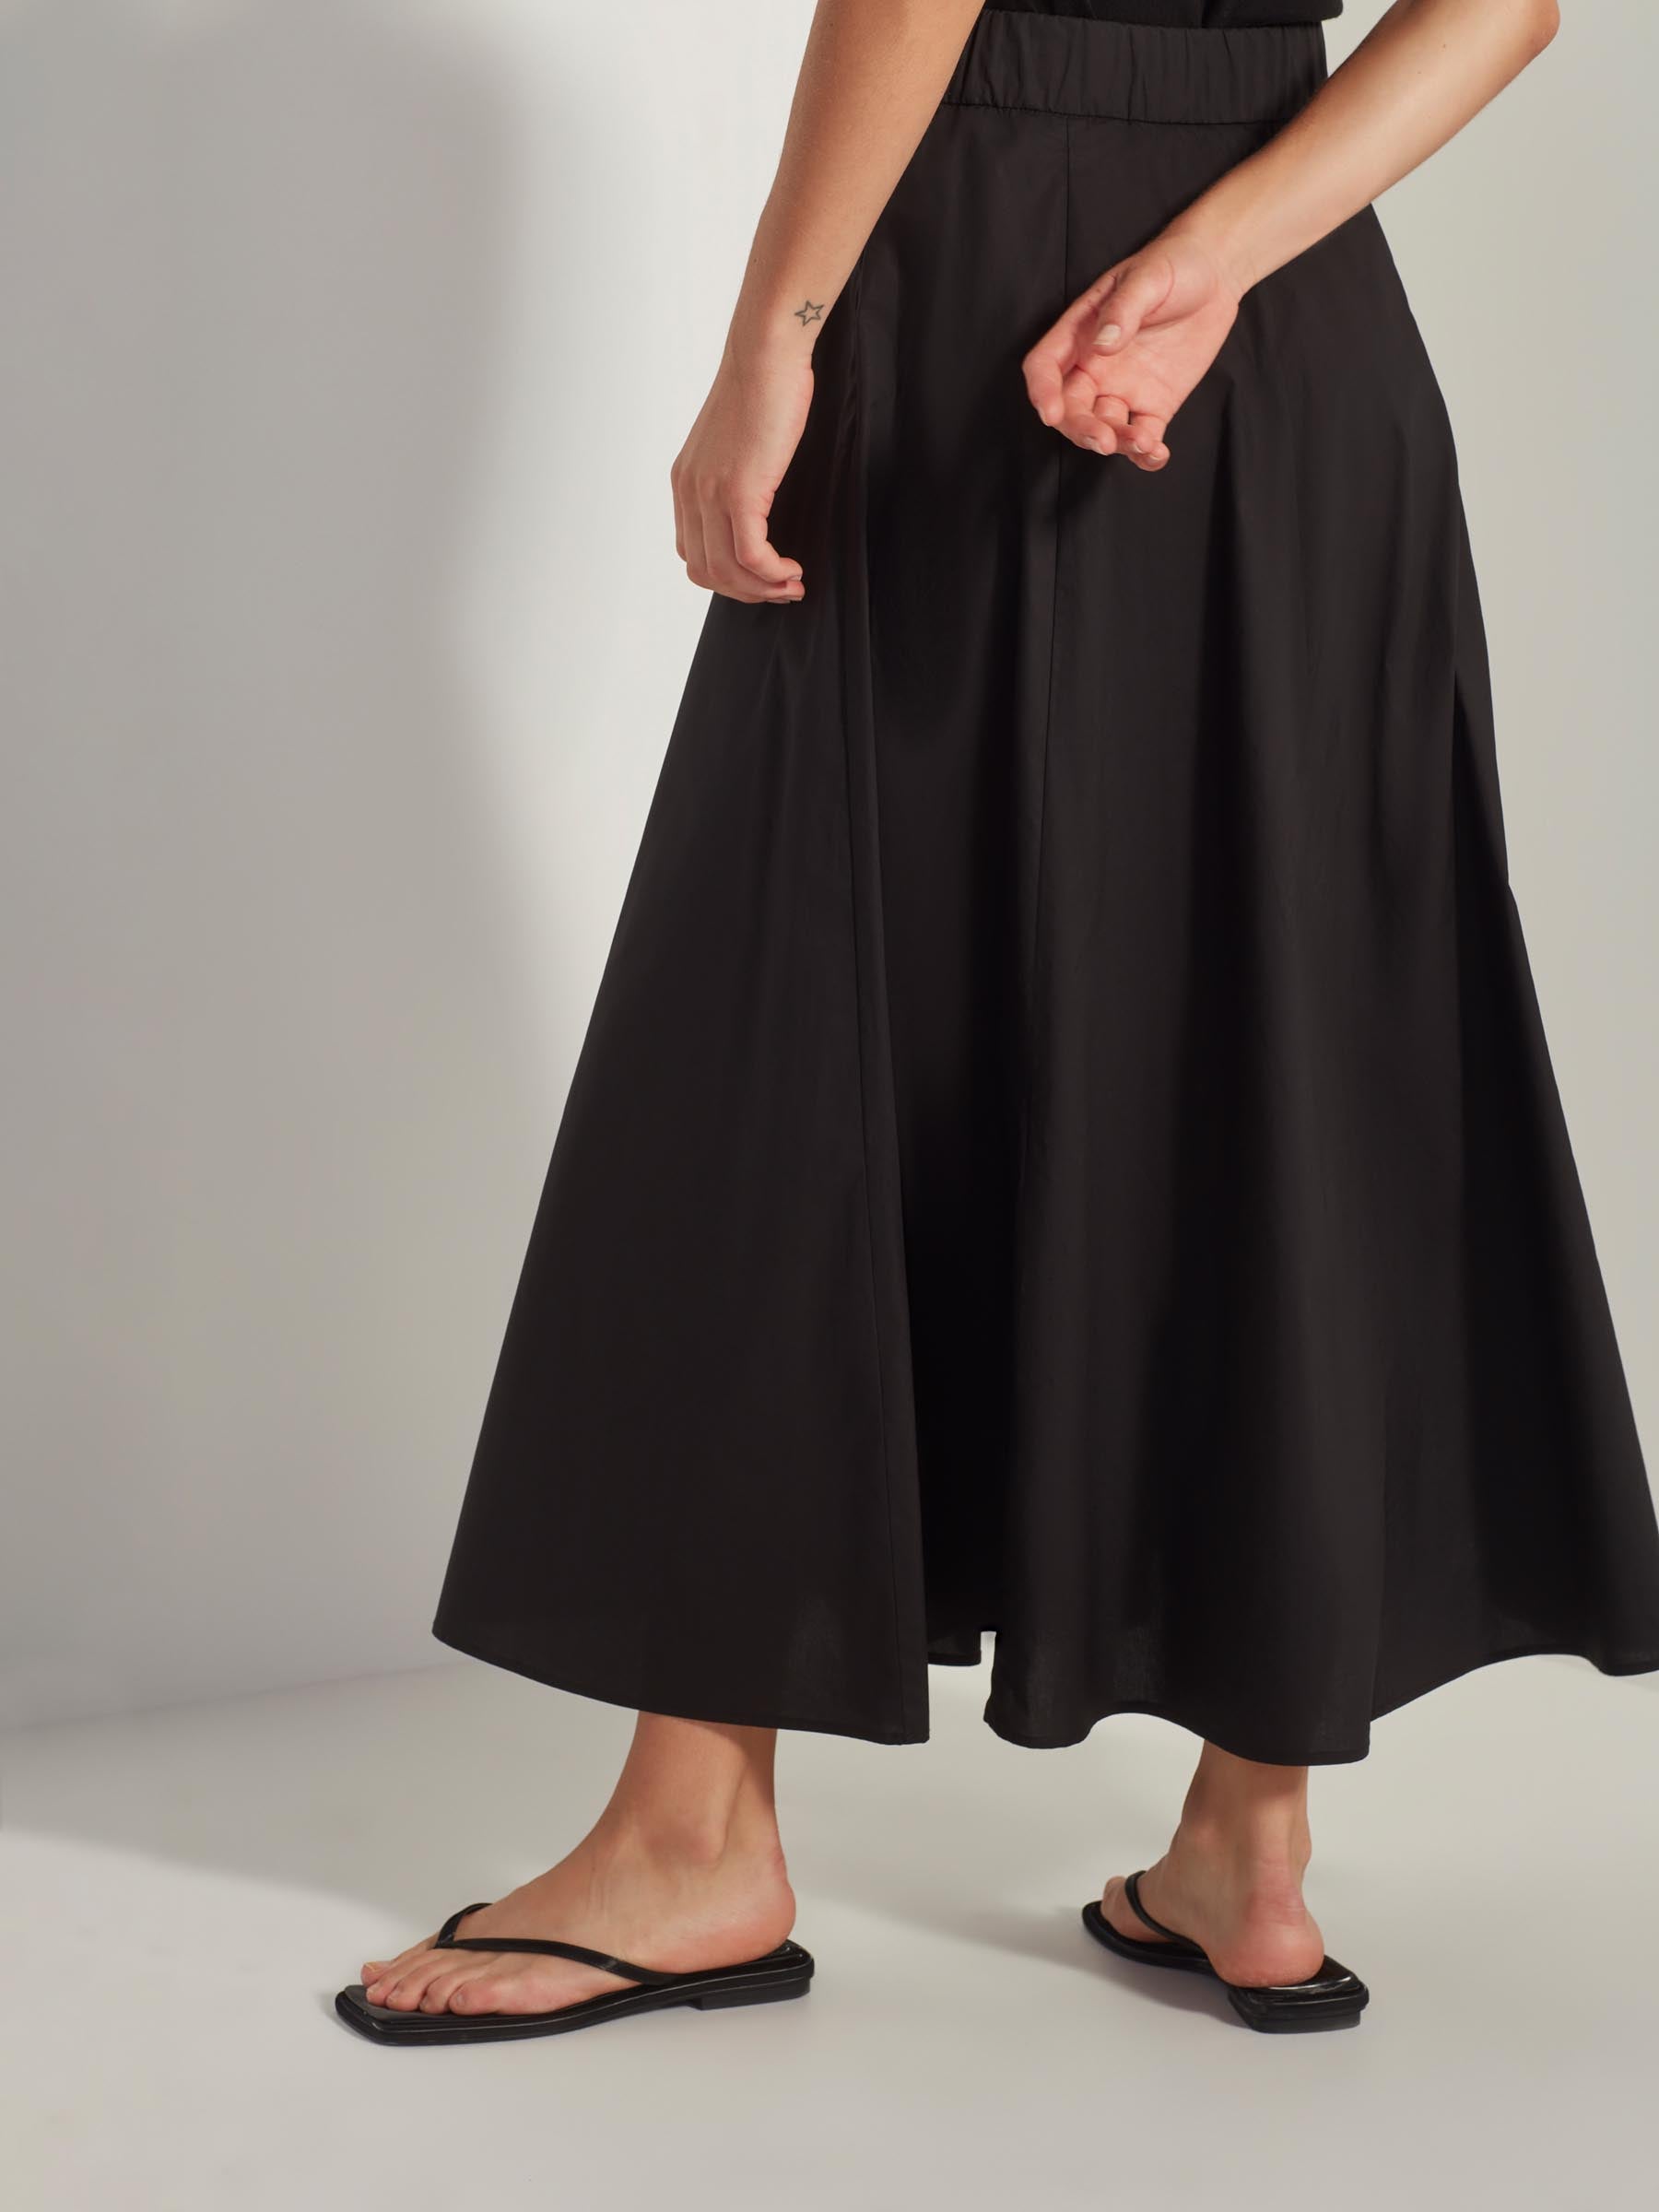 Tabitha Skirt (Crisp Cotton) Black